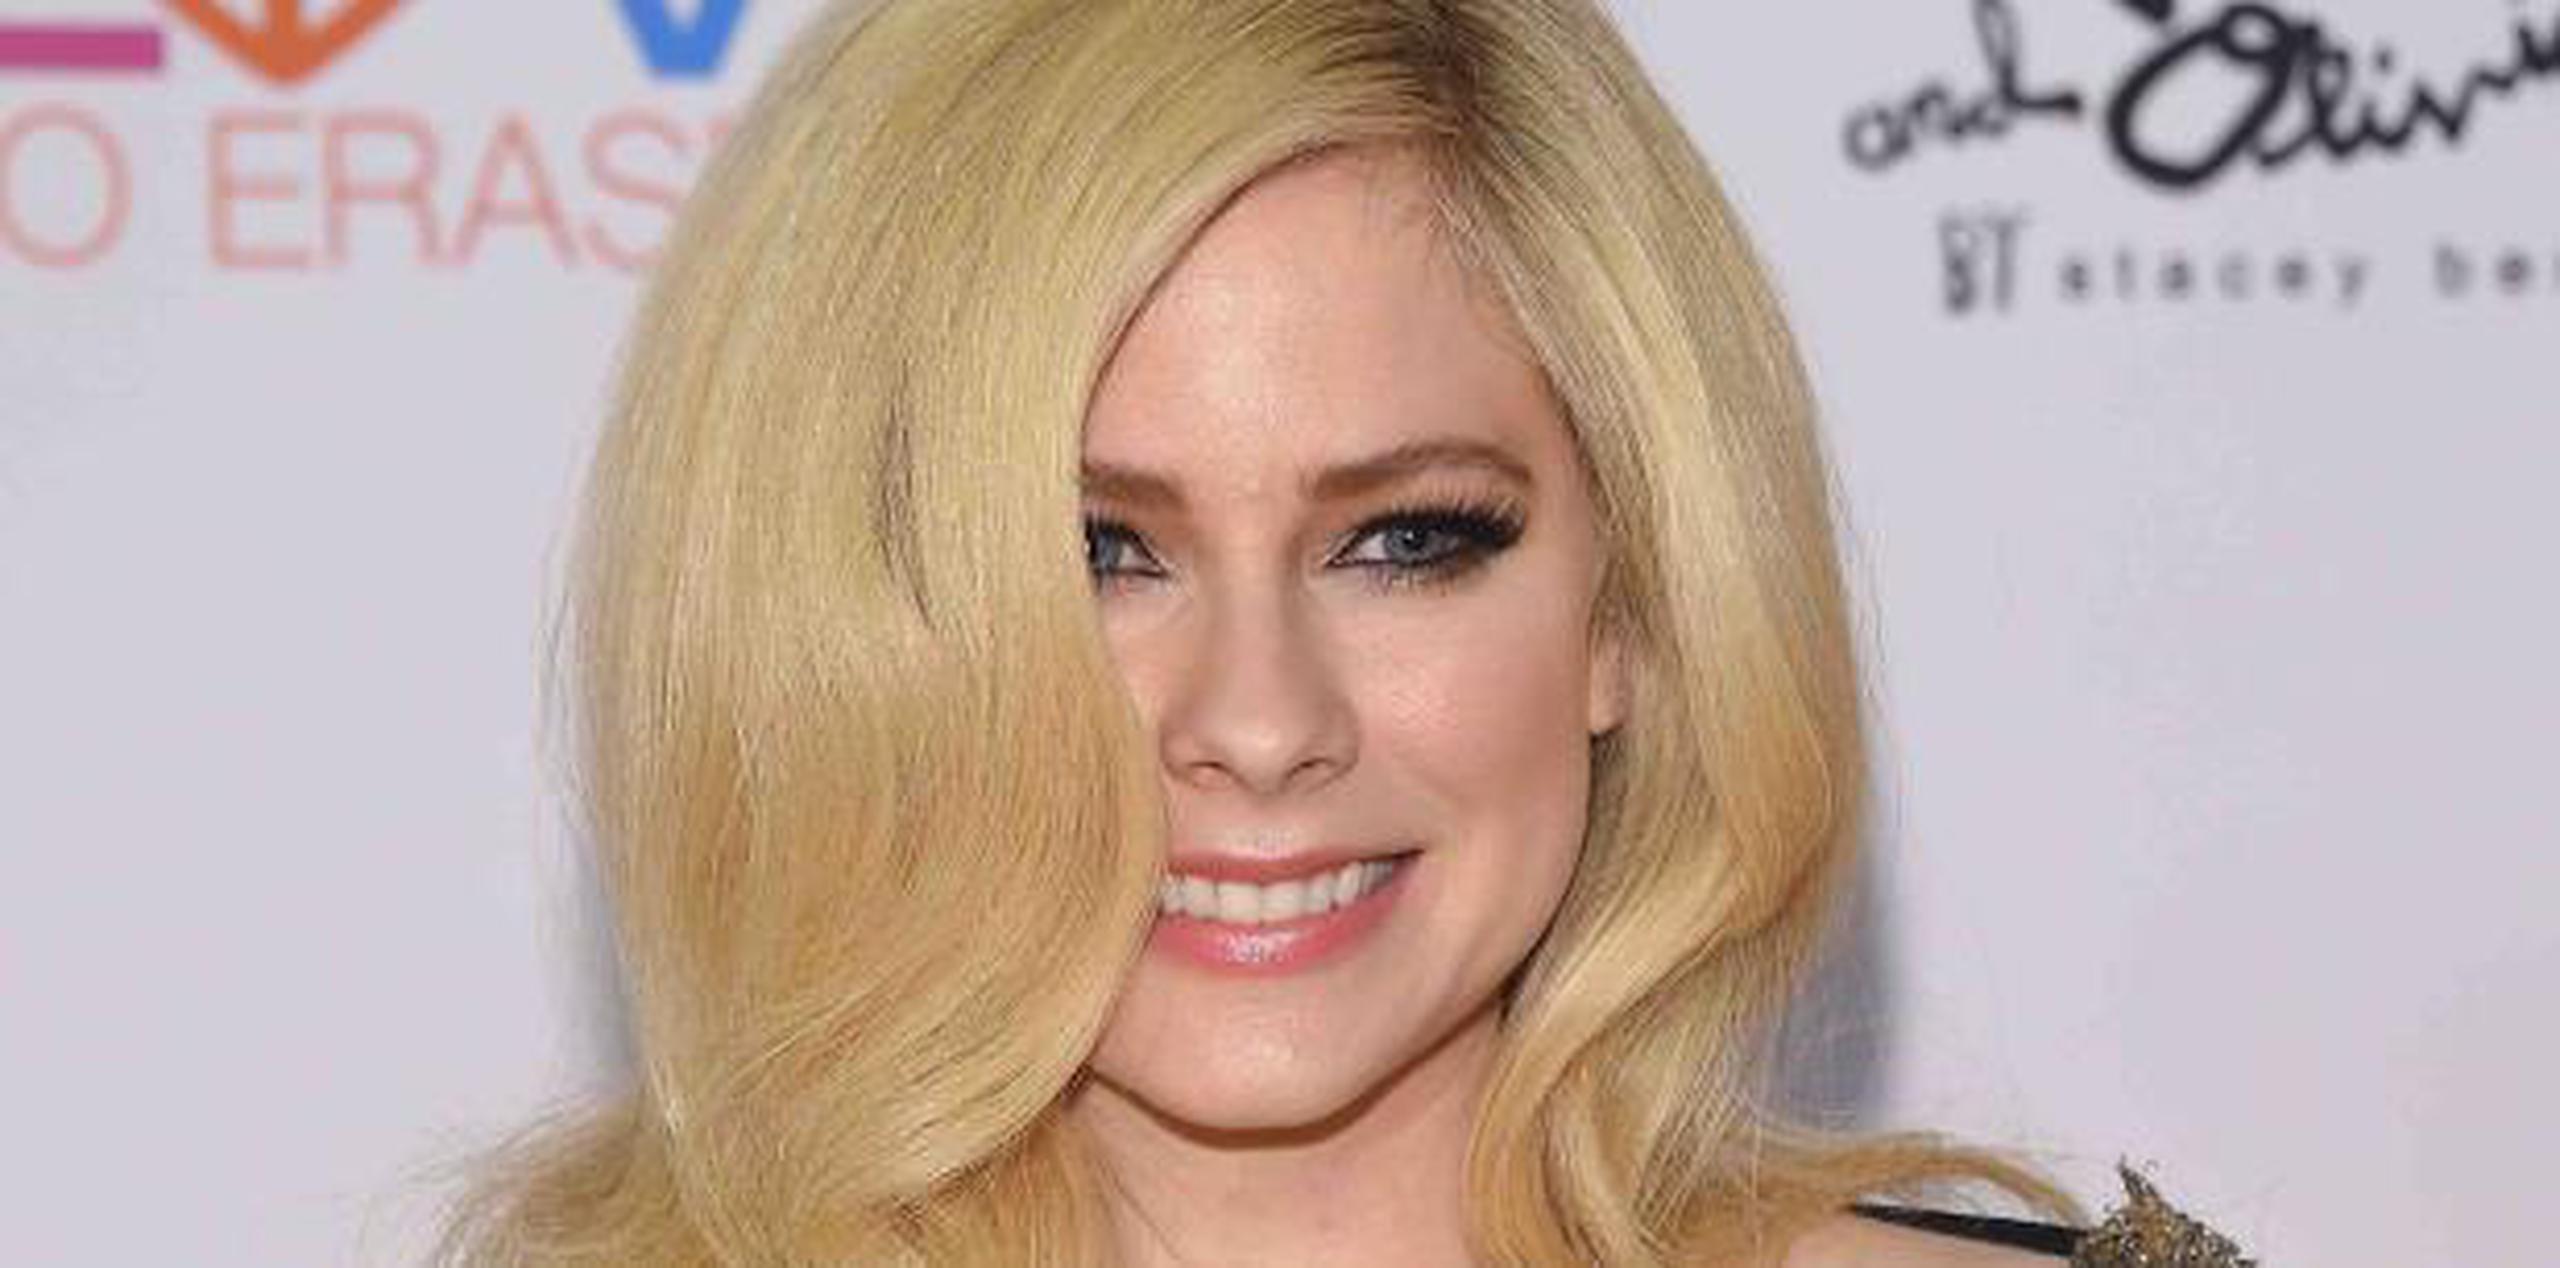 Avril Lavigne. (Shutterstock)